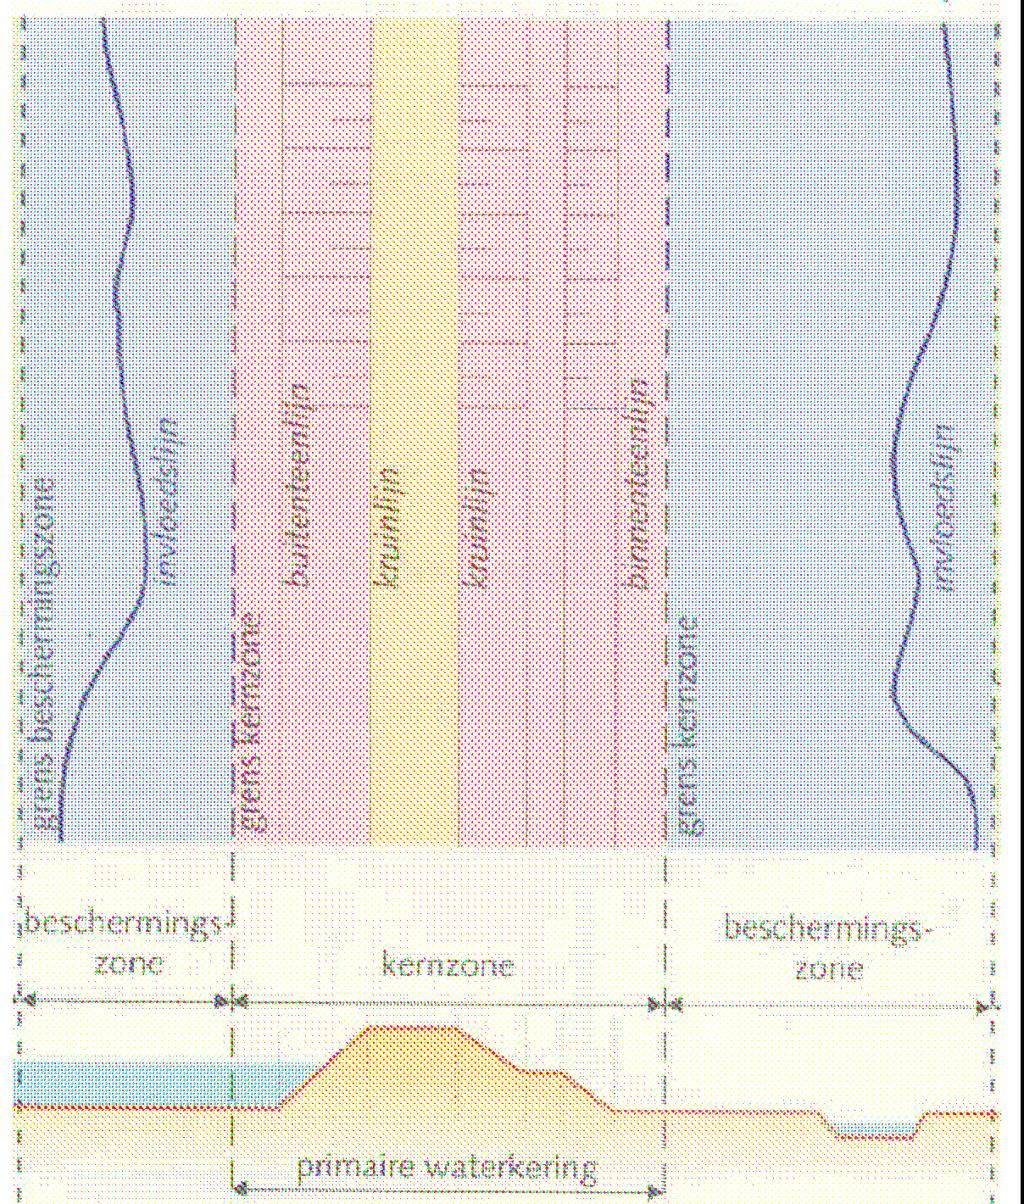 rivierdijken de minimale kruinbreedte en de breedte van de binnenberm van een dijklichaam. De situatietekening geeft de ligging en de zones van de primaire waterkering weer.